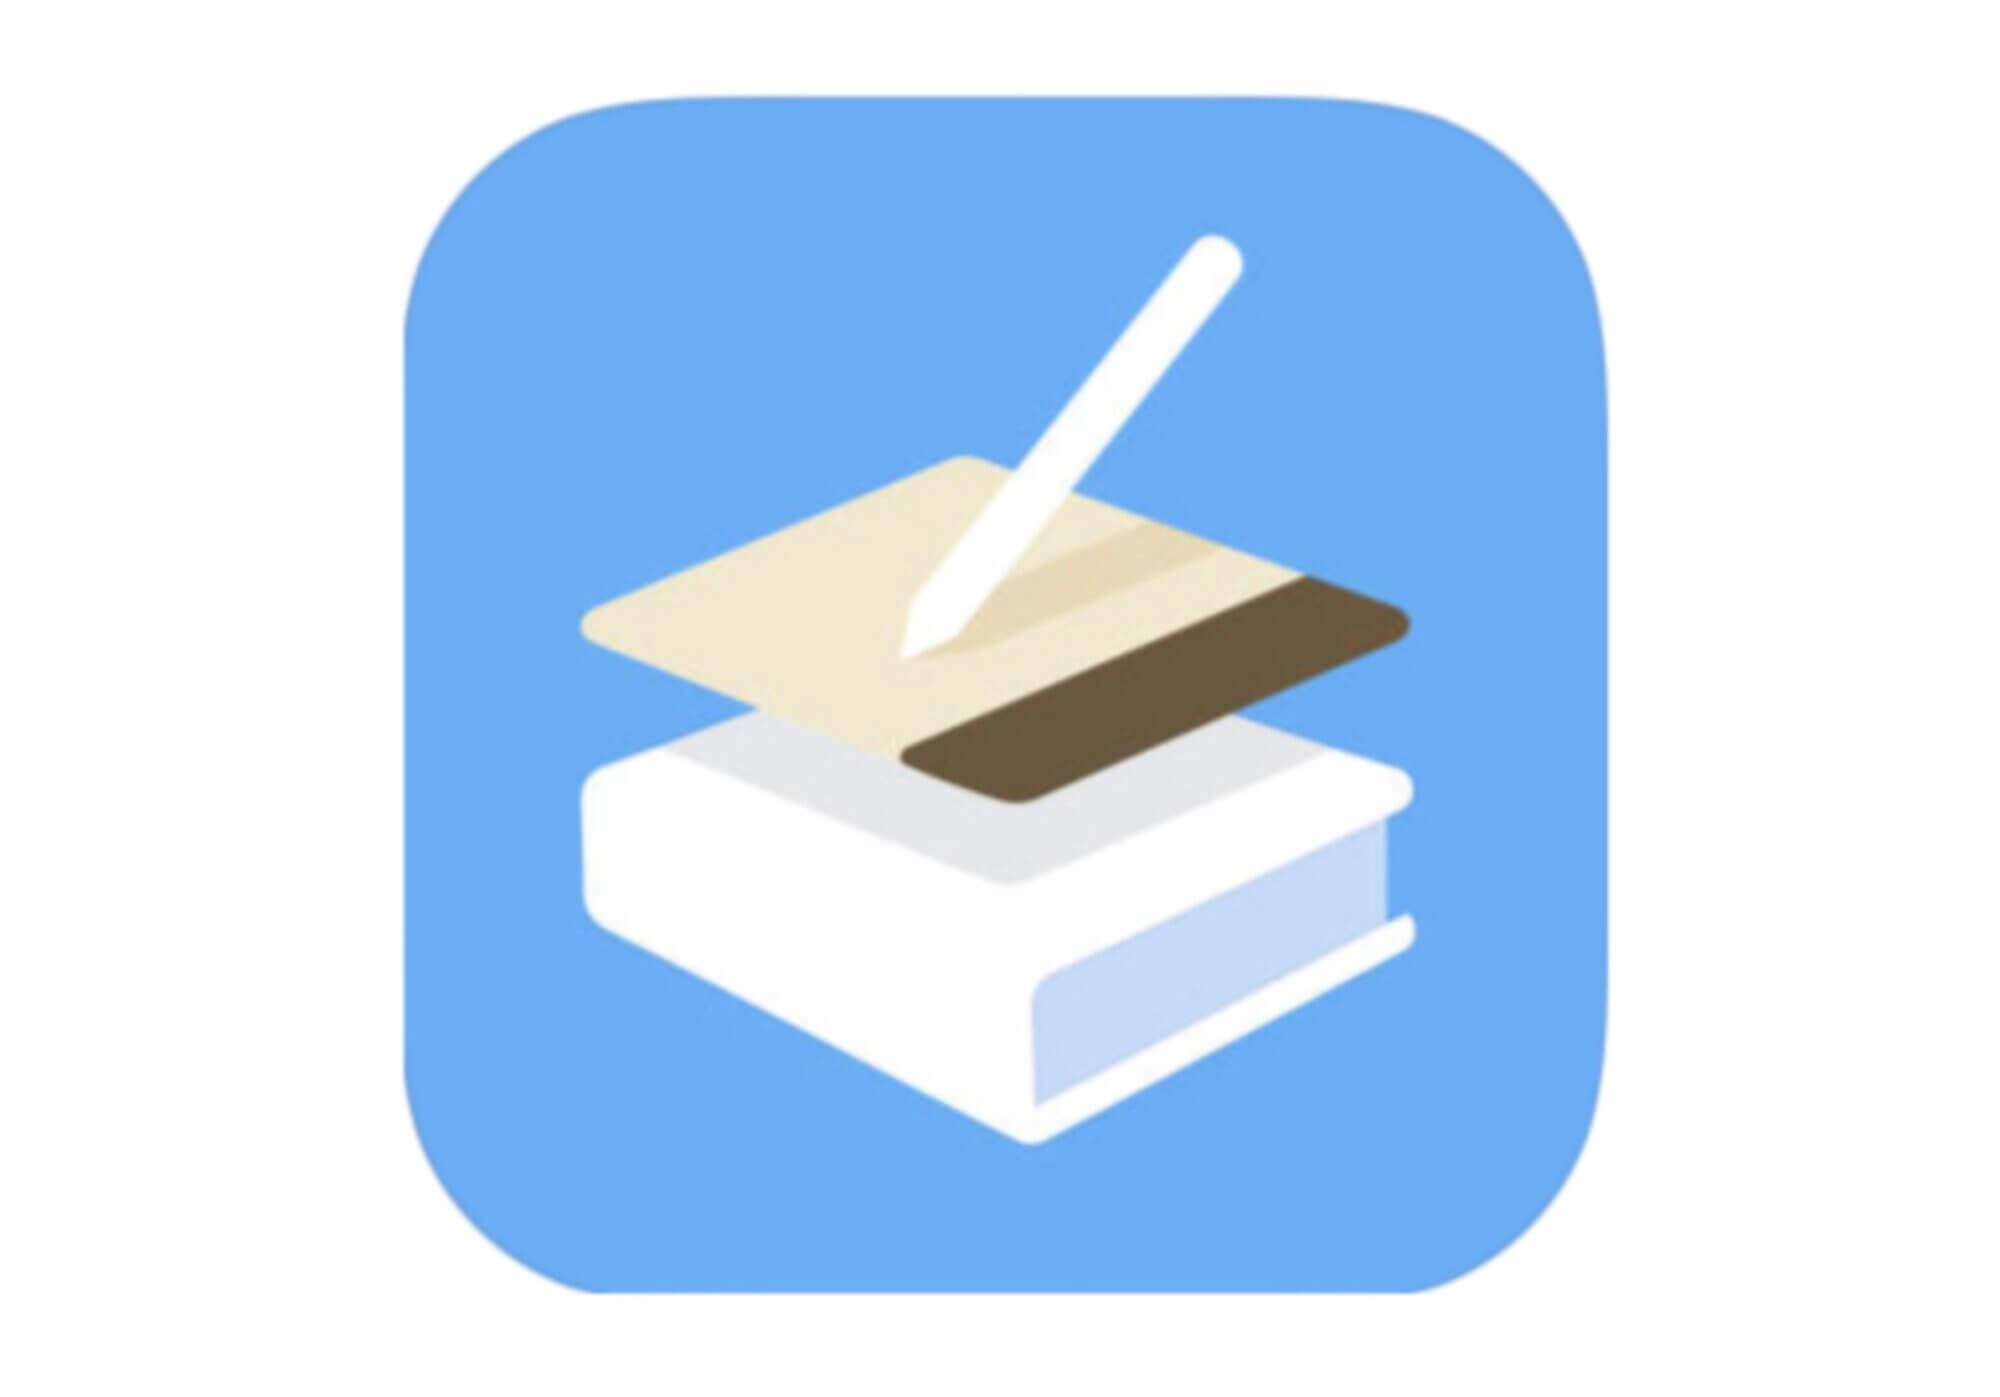 [Gear-Soft] Flexcil – iOSアプリ – 学生における勉強、仕事での資料のまとに活躍するPDFファイルを素材にしてノートを取れる学習ツール – 電子ダイアリーにも使用可能な応用も [2021/01/23] ID1377